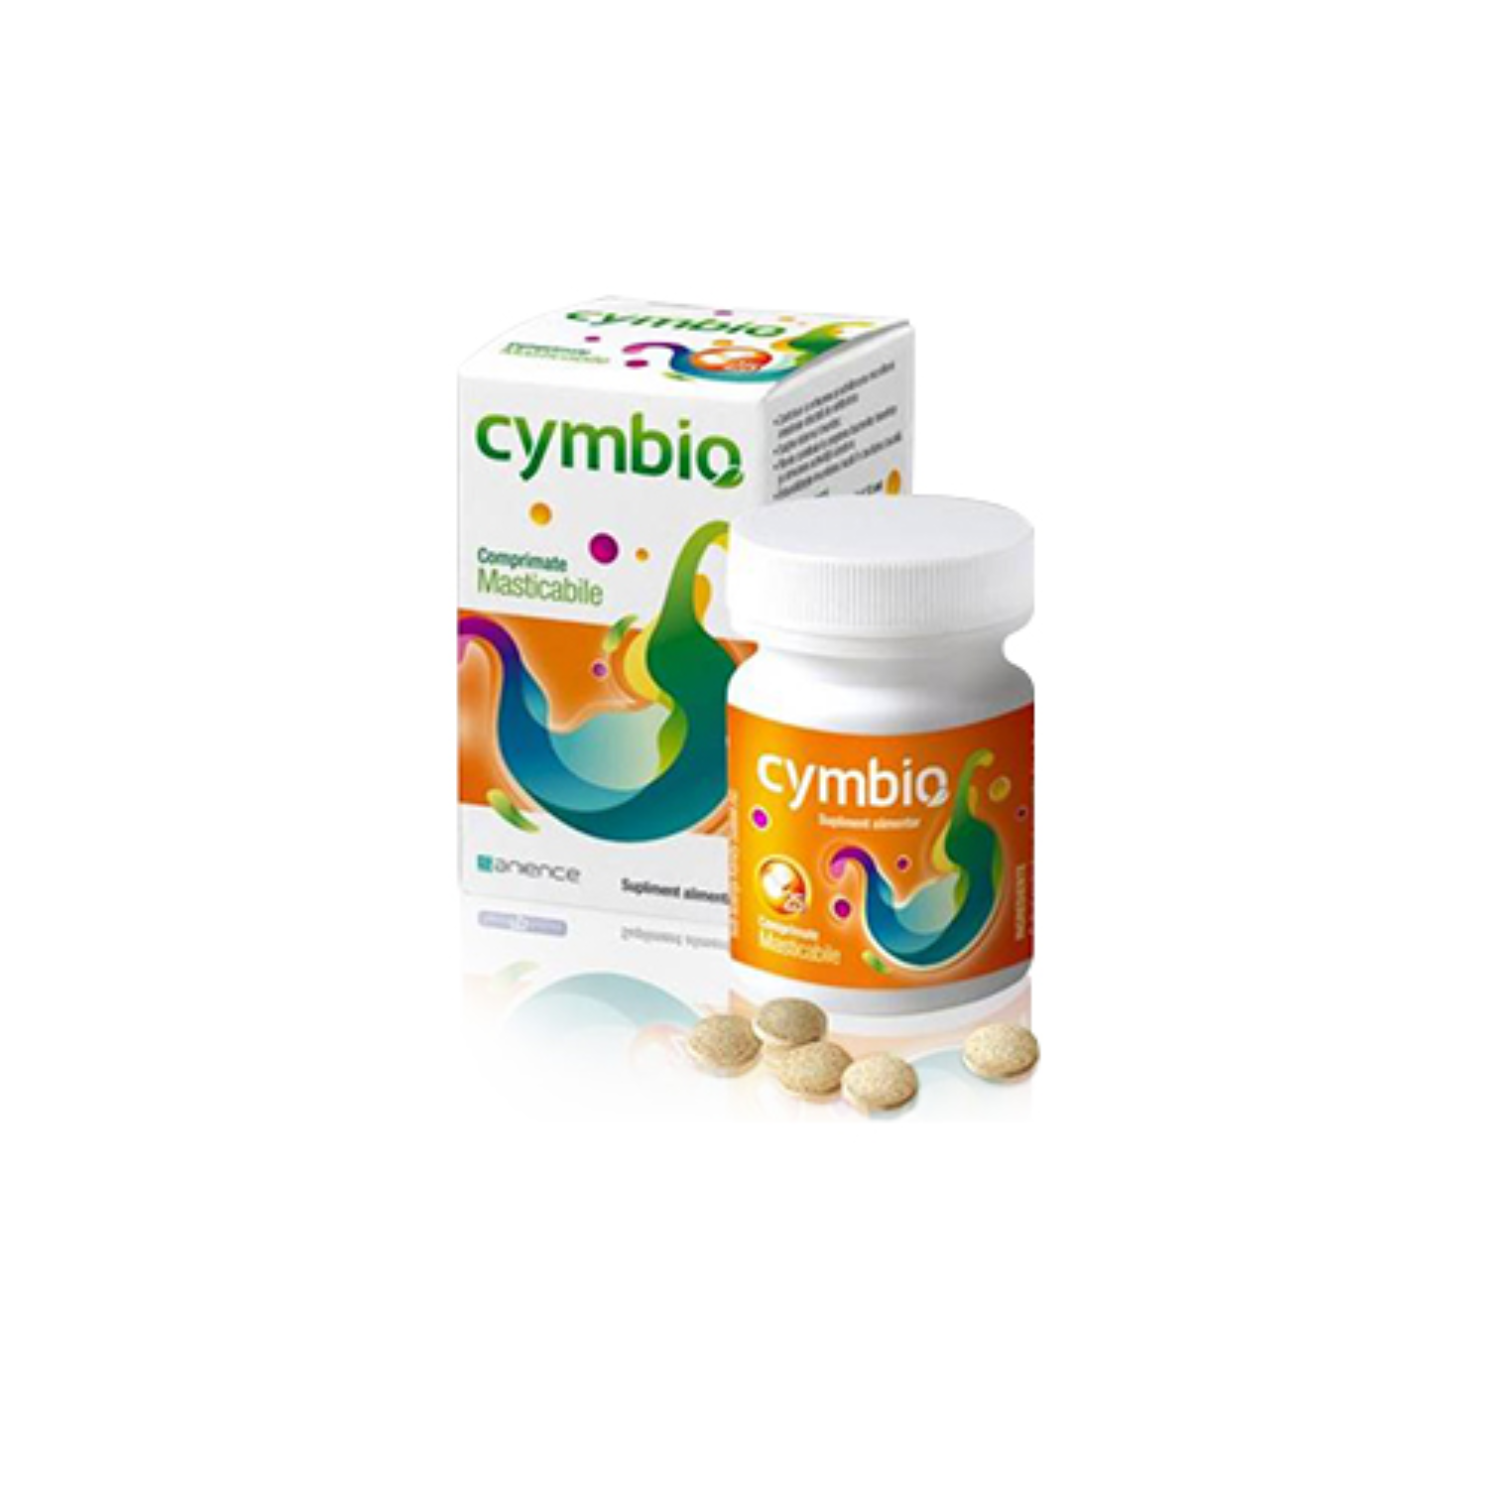 Cymbio, 25 comprimate masticabile, Sanience